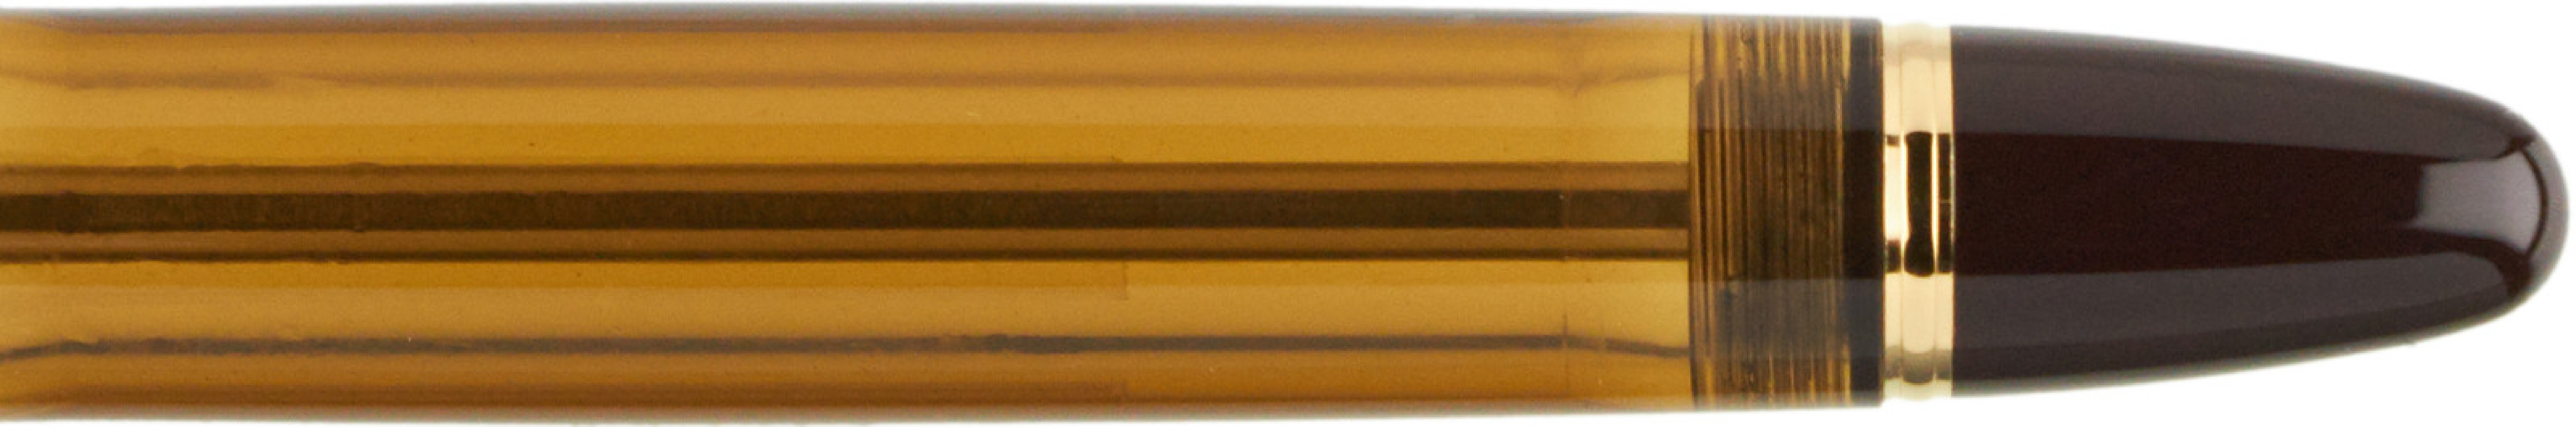 Pilot Custom 823 Amber Fountain Pen FKKE-3MRP-BN